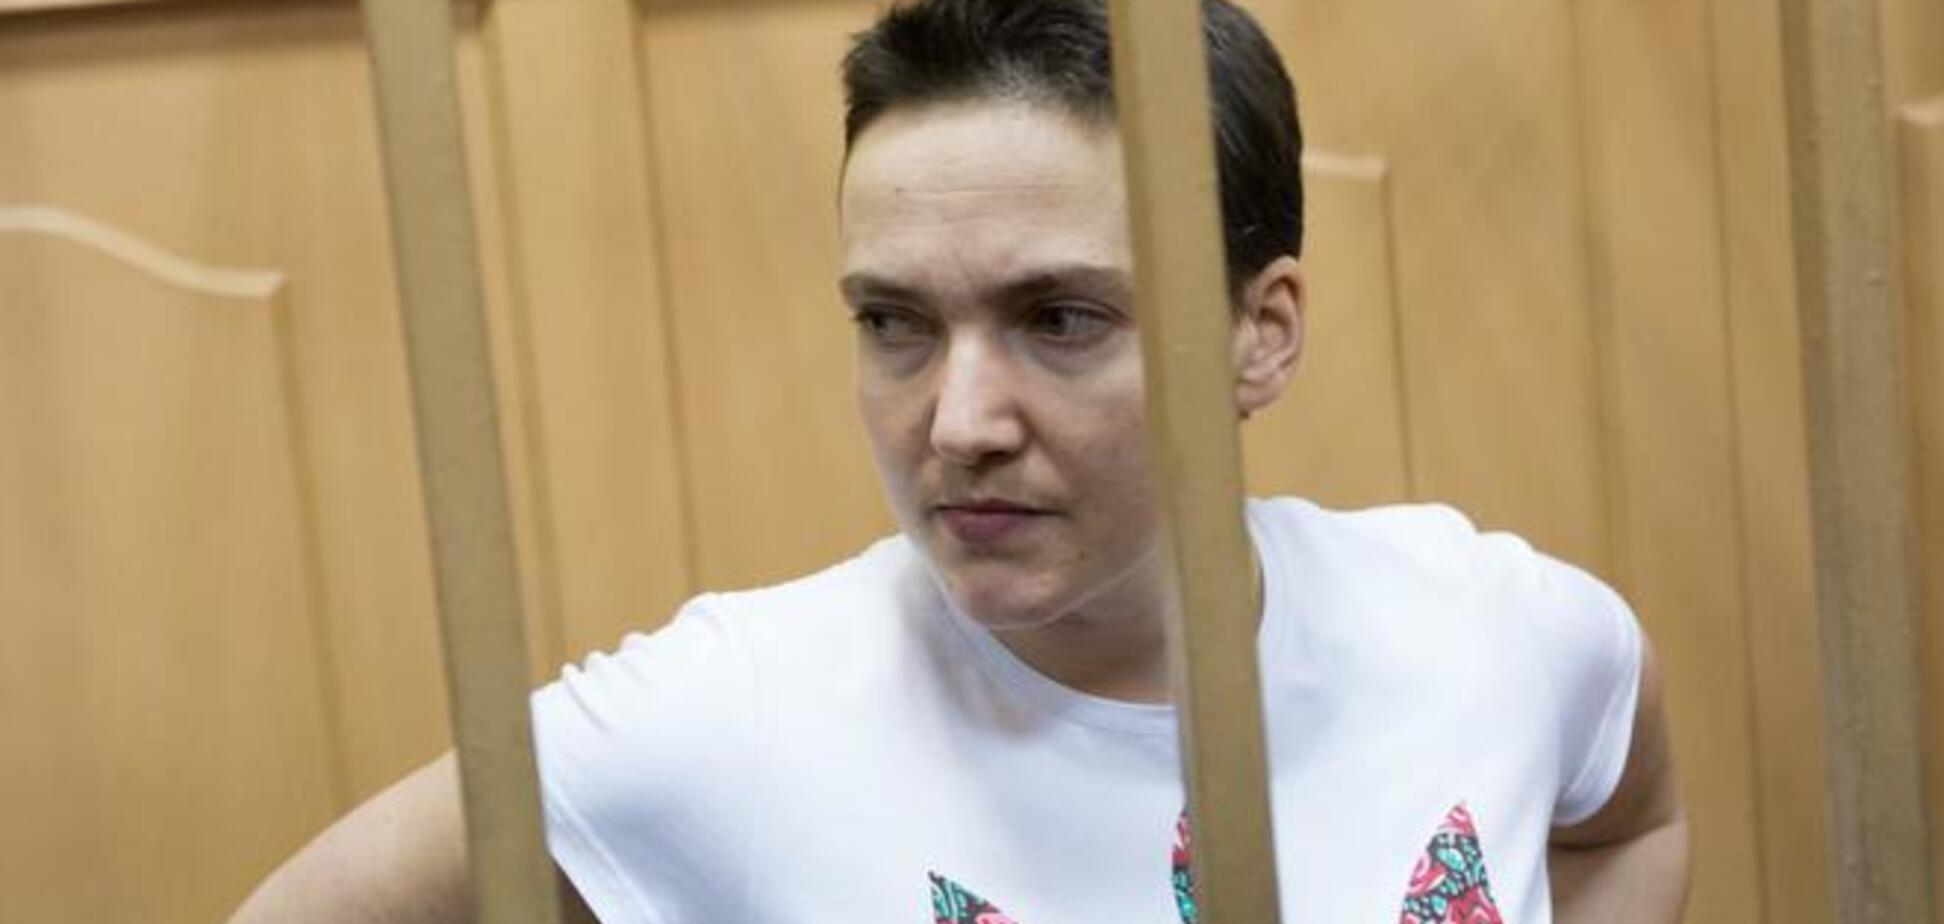 Савченко через голодування втратила 10 кілограмів - адвокат